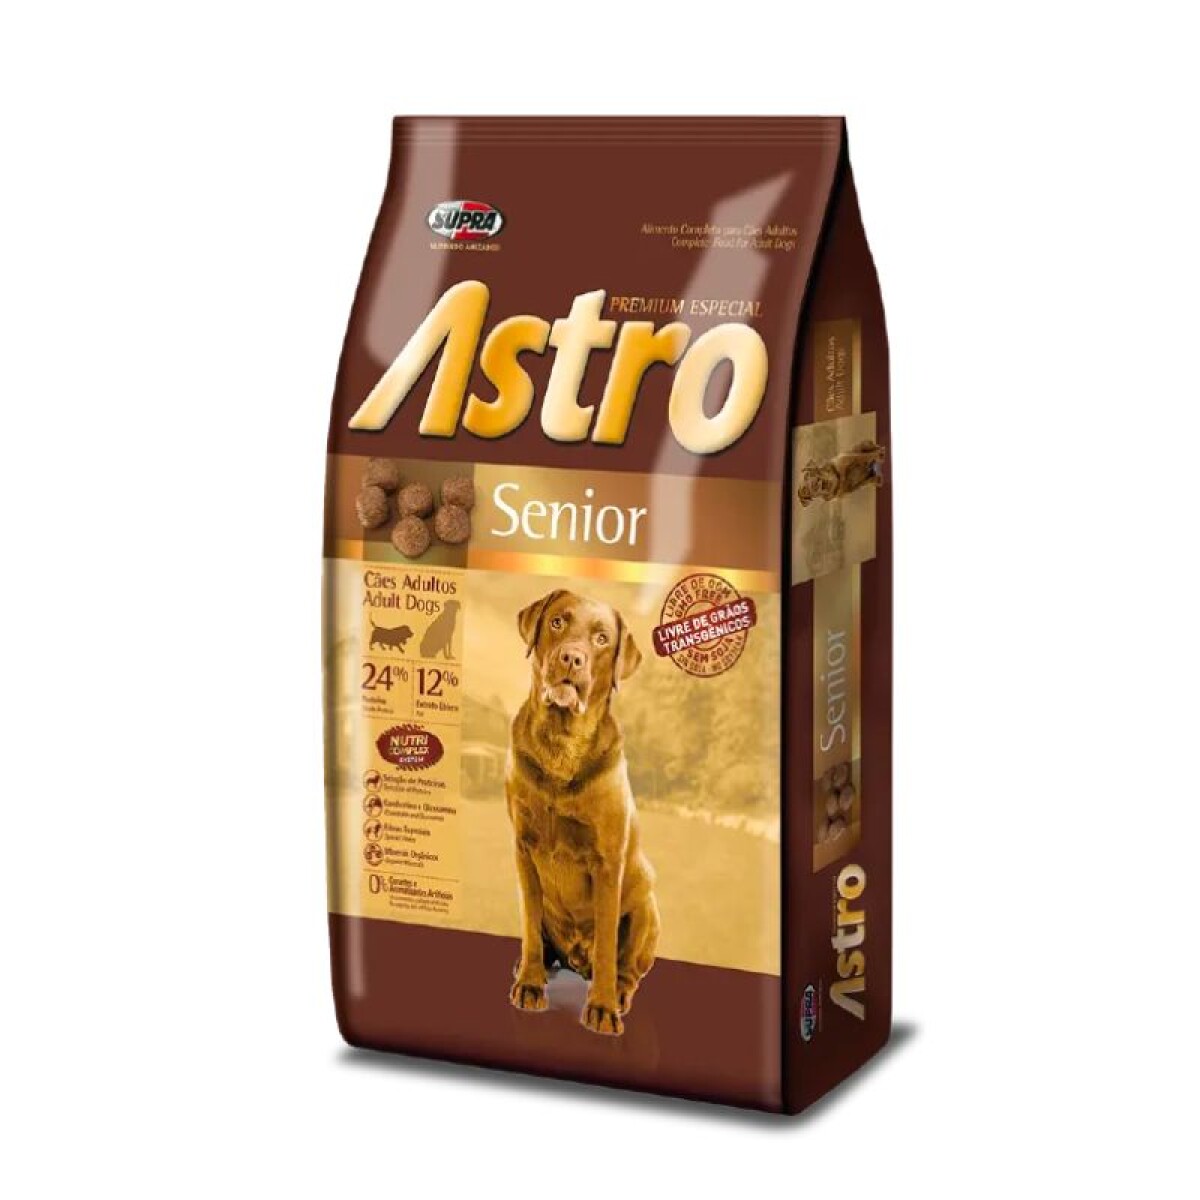 ASTRO SENIOR 15KG - Astro Senior 15kg 